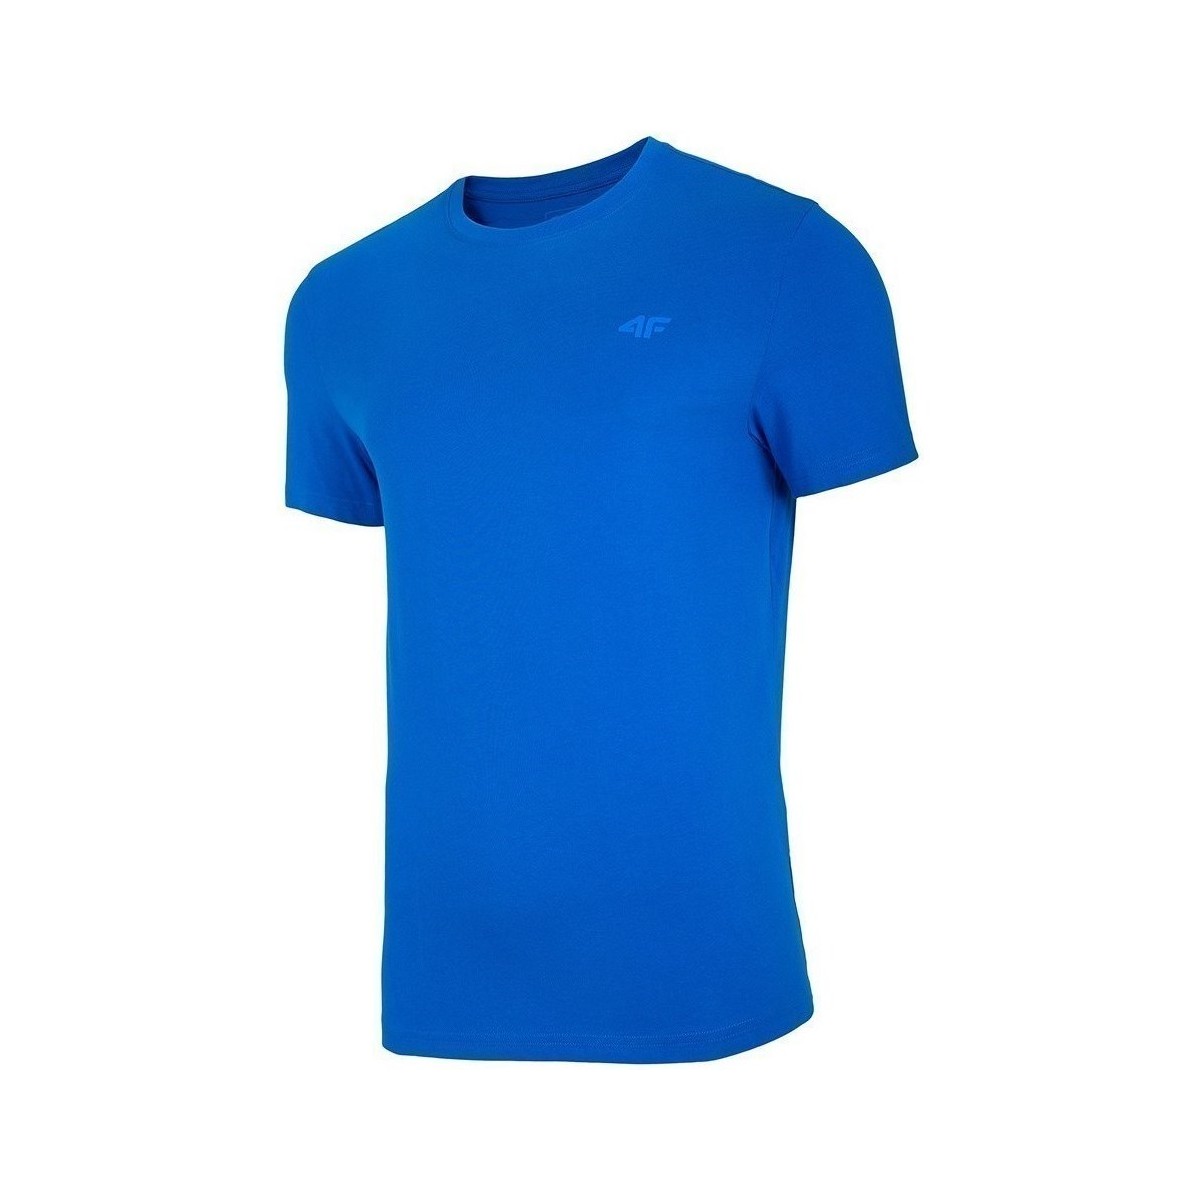 Oblačila Moški Majice s kratkimi rokavi 4F TSM003 Modra